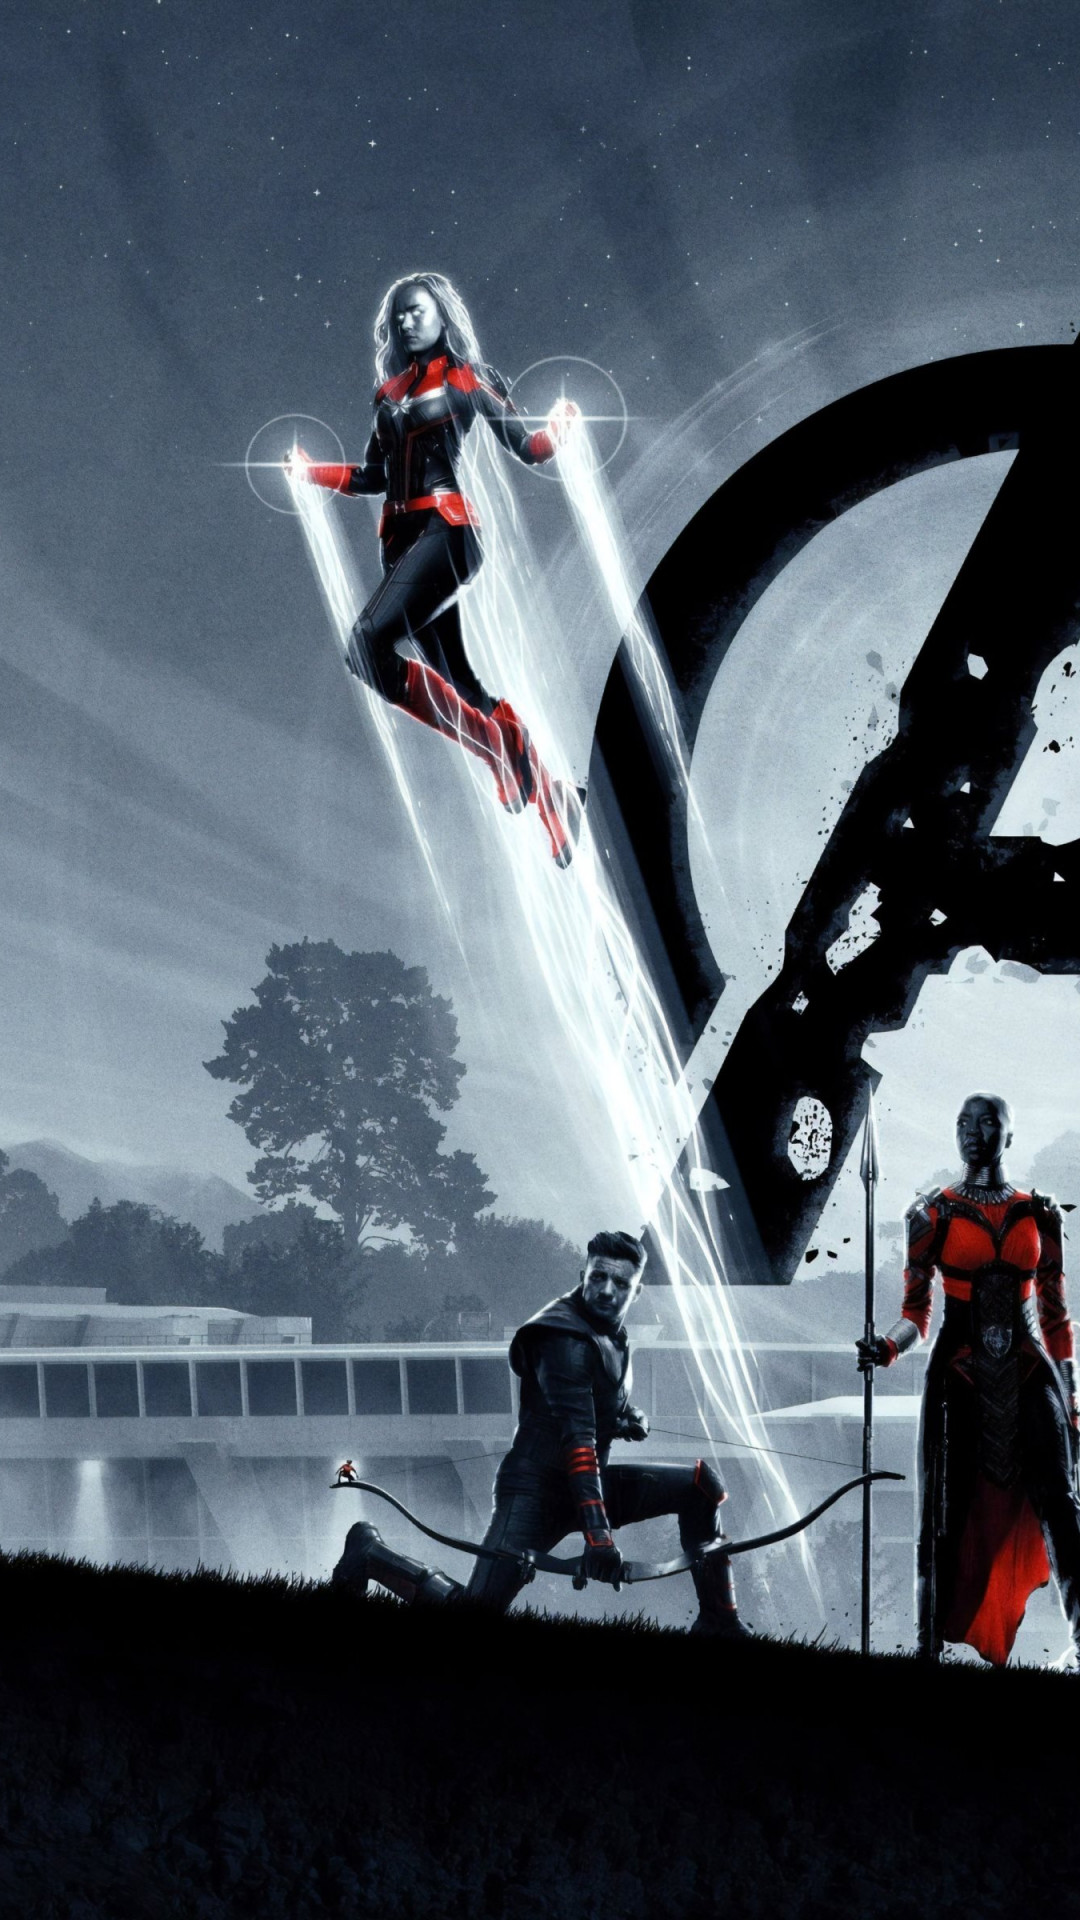 Download wallpaper: Avengers: Endgame poster 1080x1920